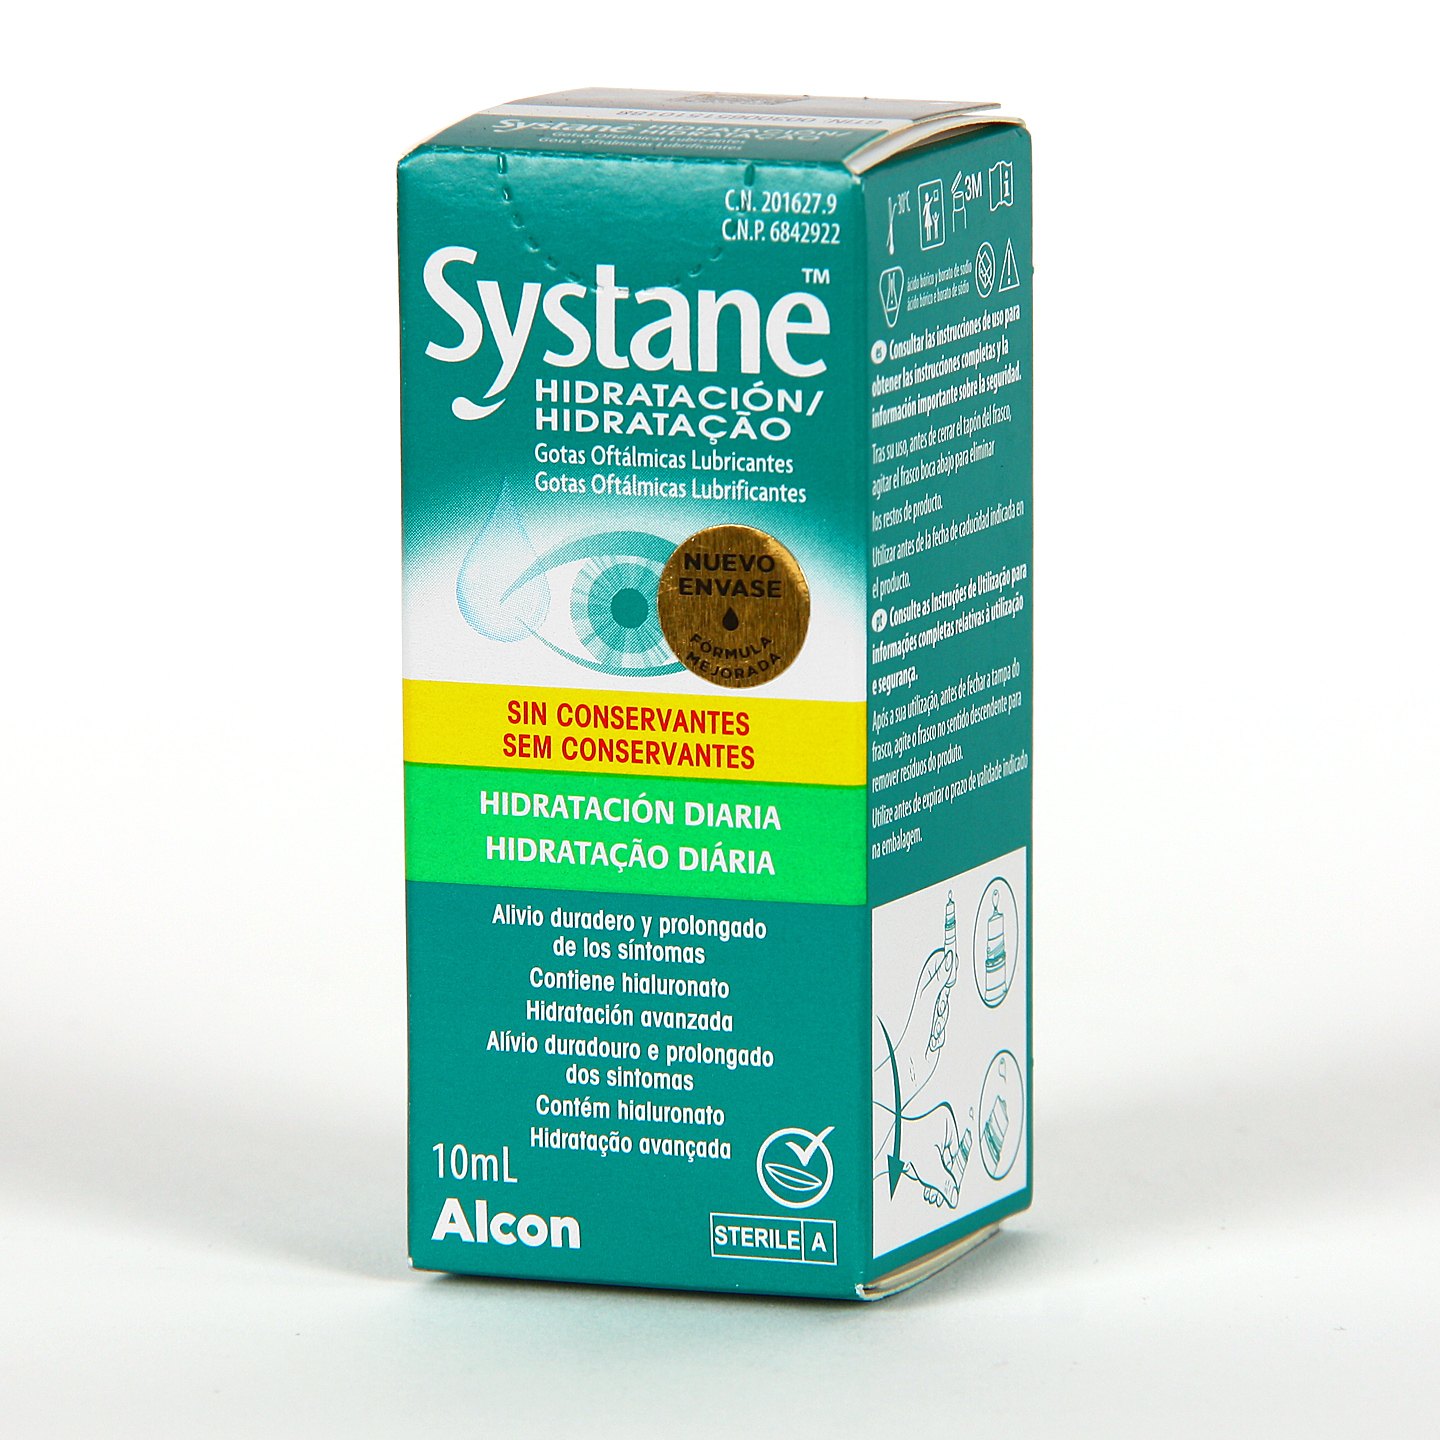 Alcon lanza Systane Hidratación, unas gotas lubricantes sin